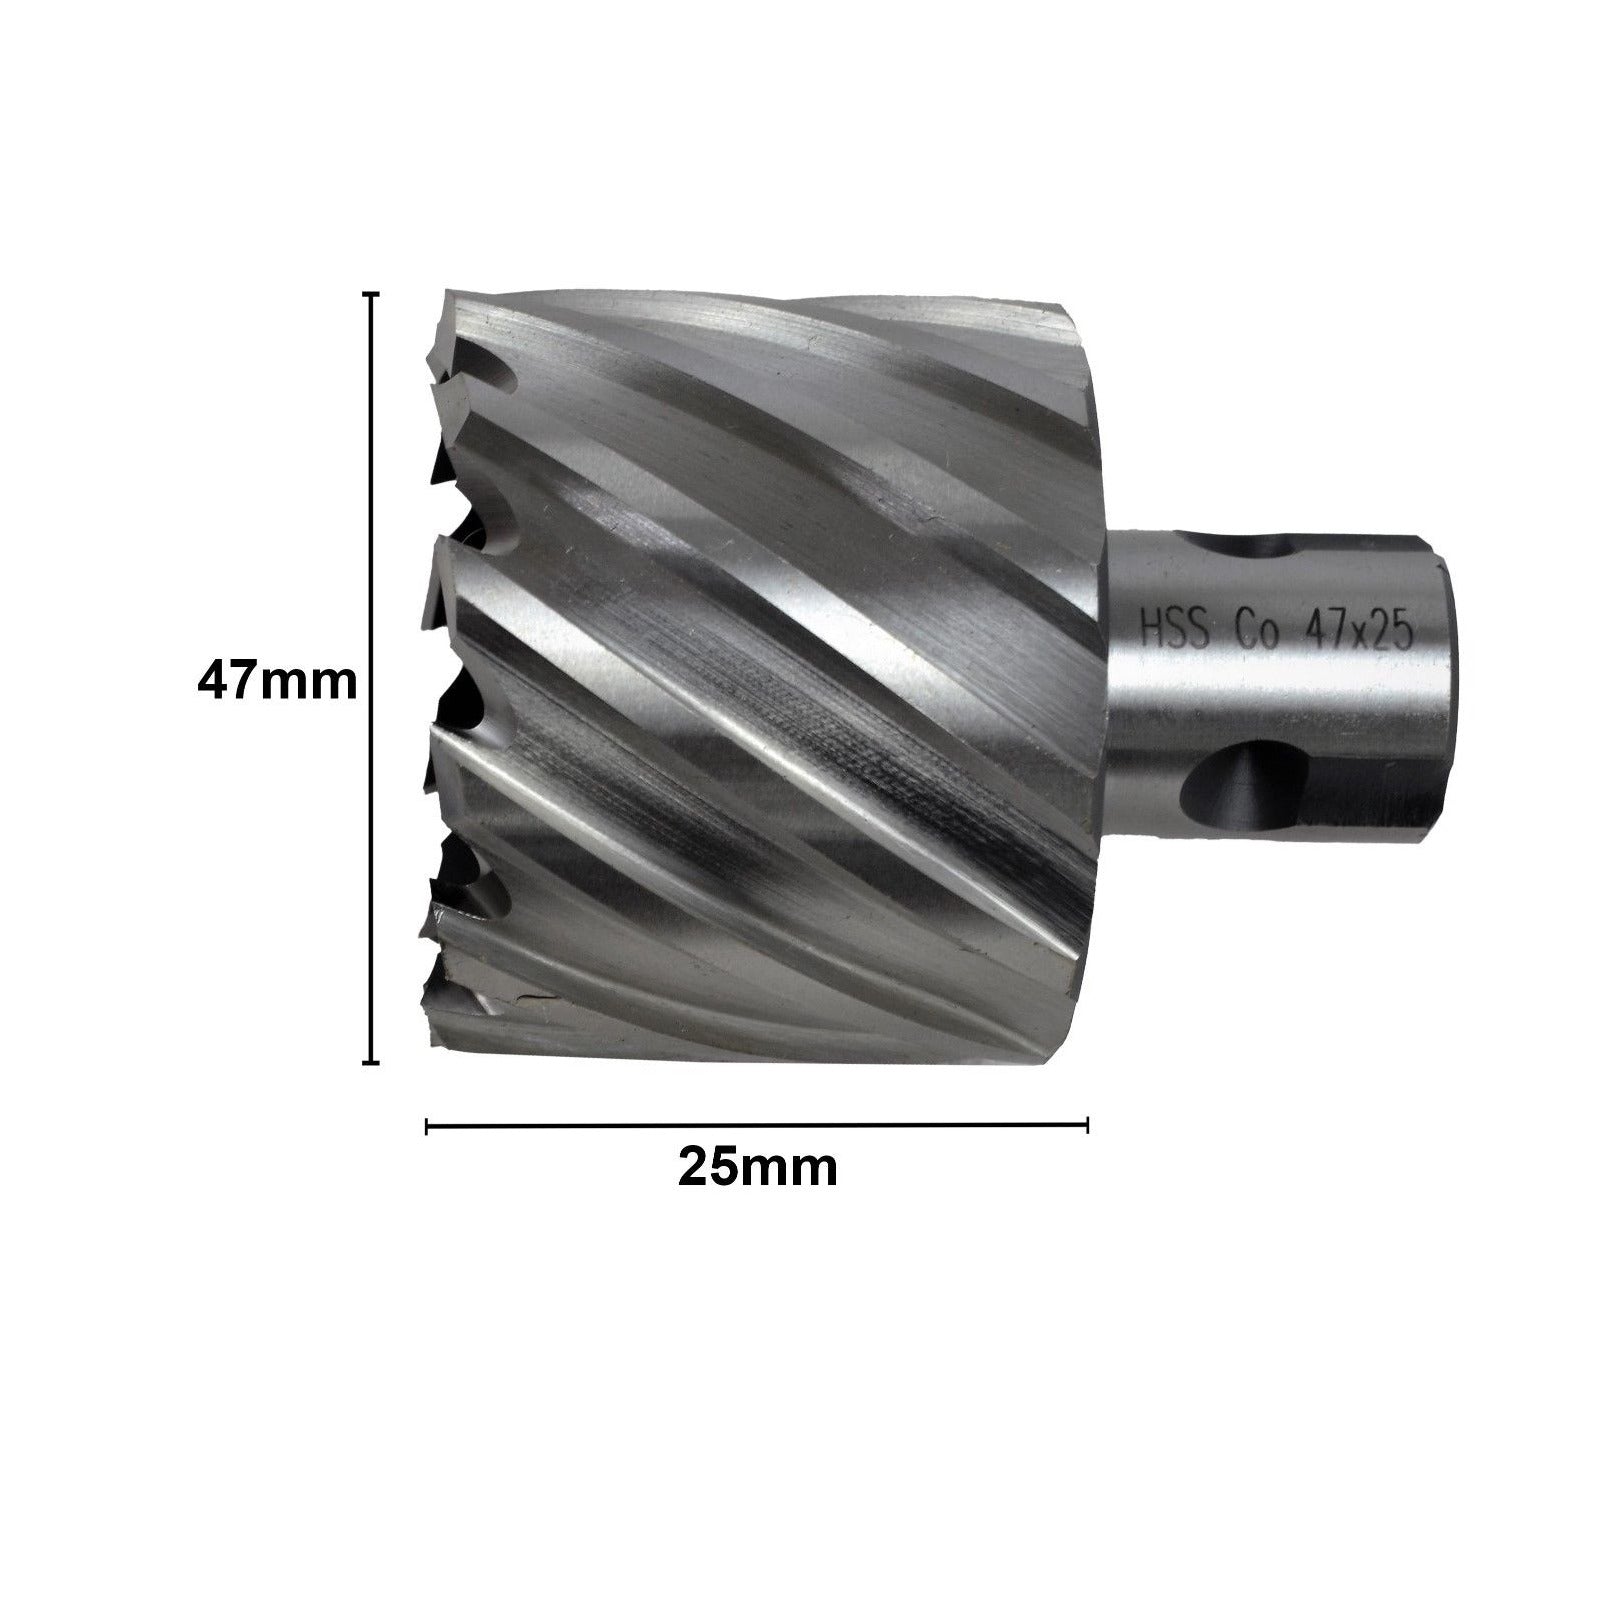 47x25 mm HSS Annular Broach Cutter ; Rotabroach Magnetic Drill ; Universal Shank